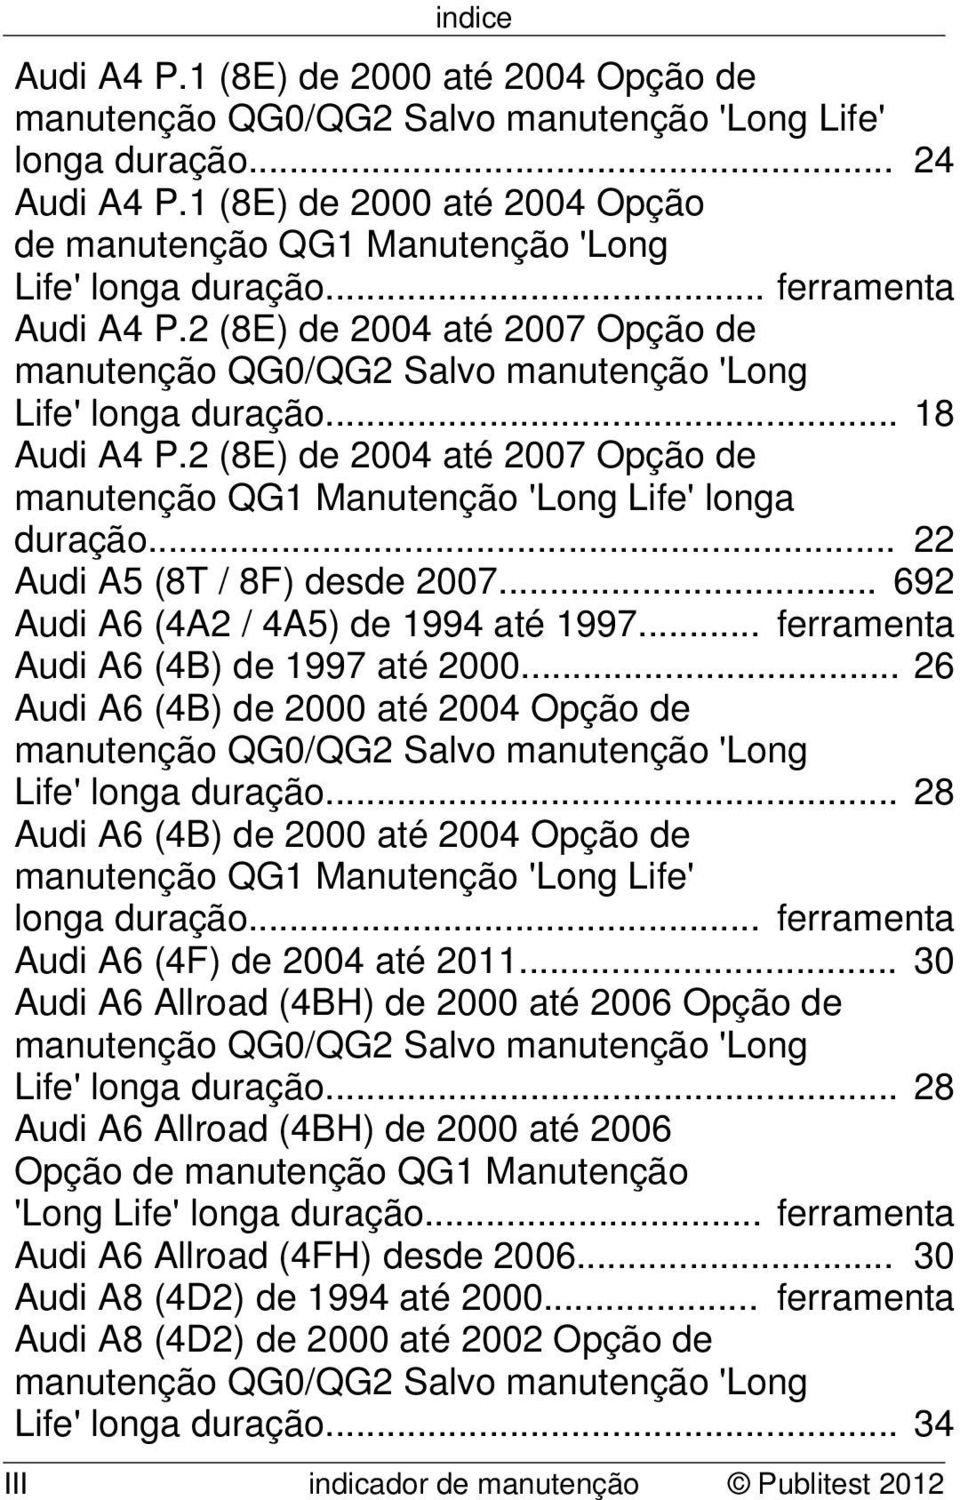 .. 692 Audi A6 (4A2 / 4A5) de 1994 até 1997... ferramenta Audi A6 (4B) de 1997 até 2000... 26 Audi A6 (4B) de 2000 até 2004 Opção de Life' longa duração.